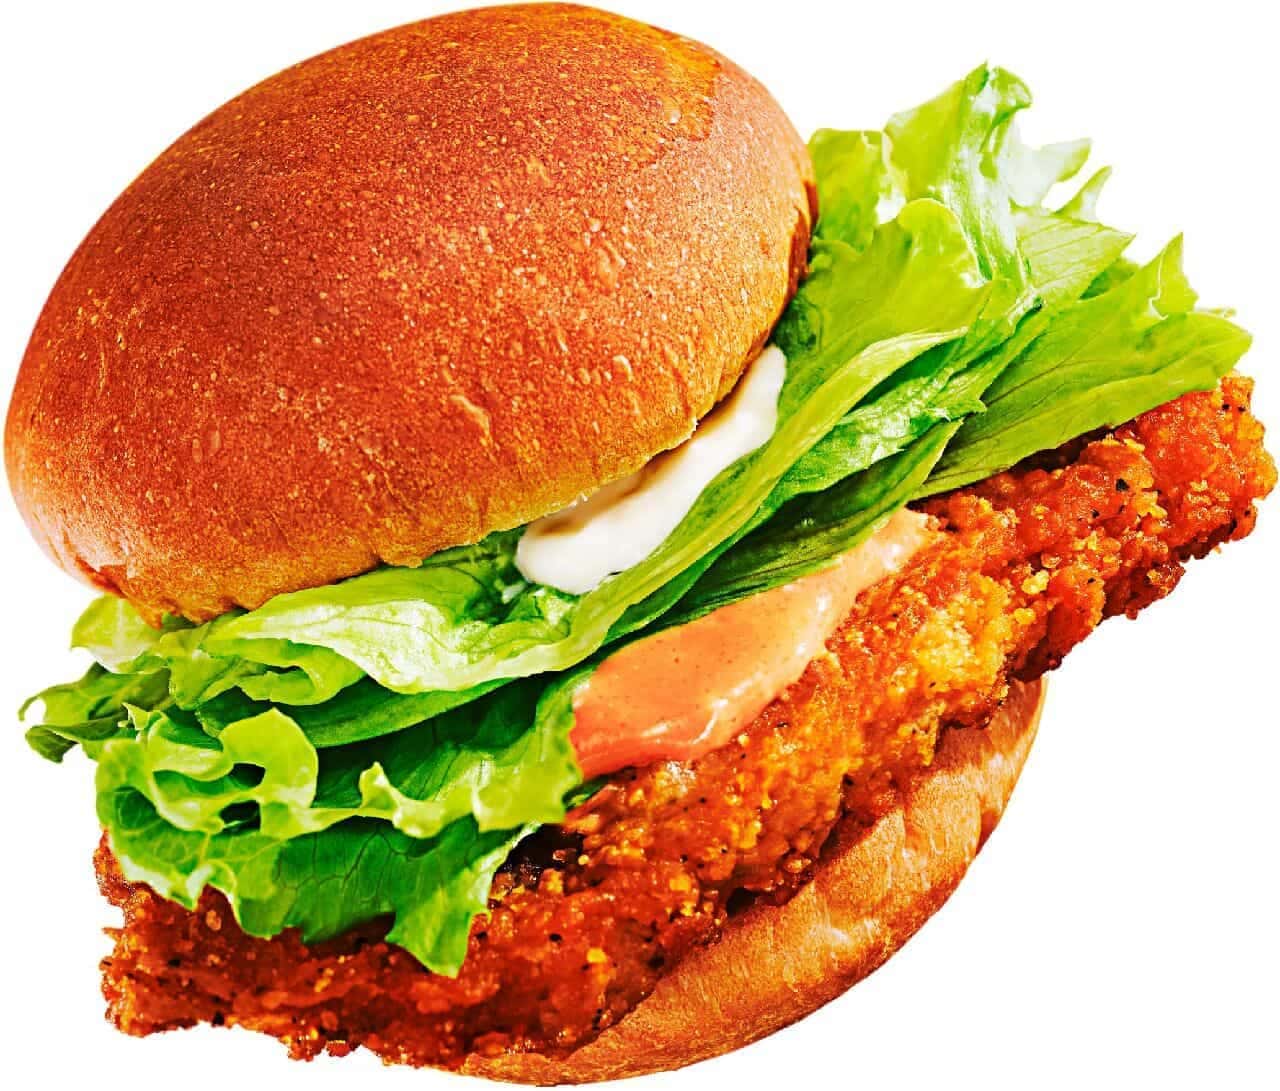 FamilyMart "Famichiki x Chicken Burger (Aurora Sauce)